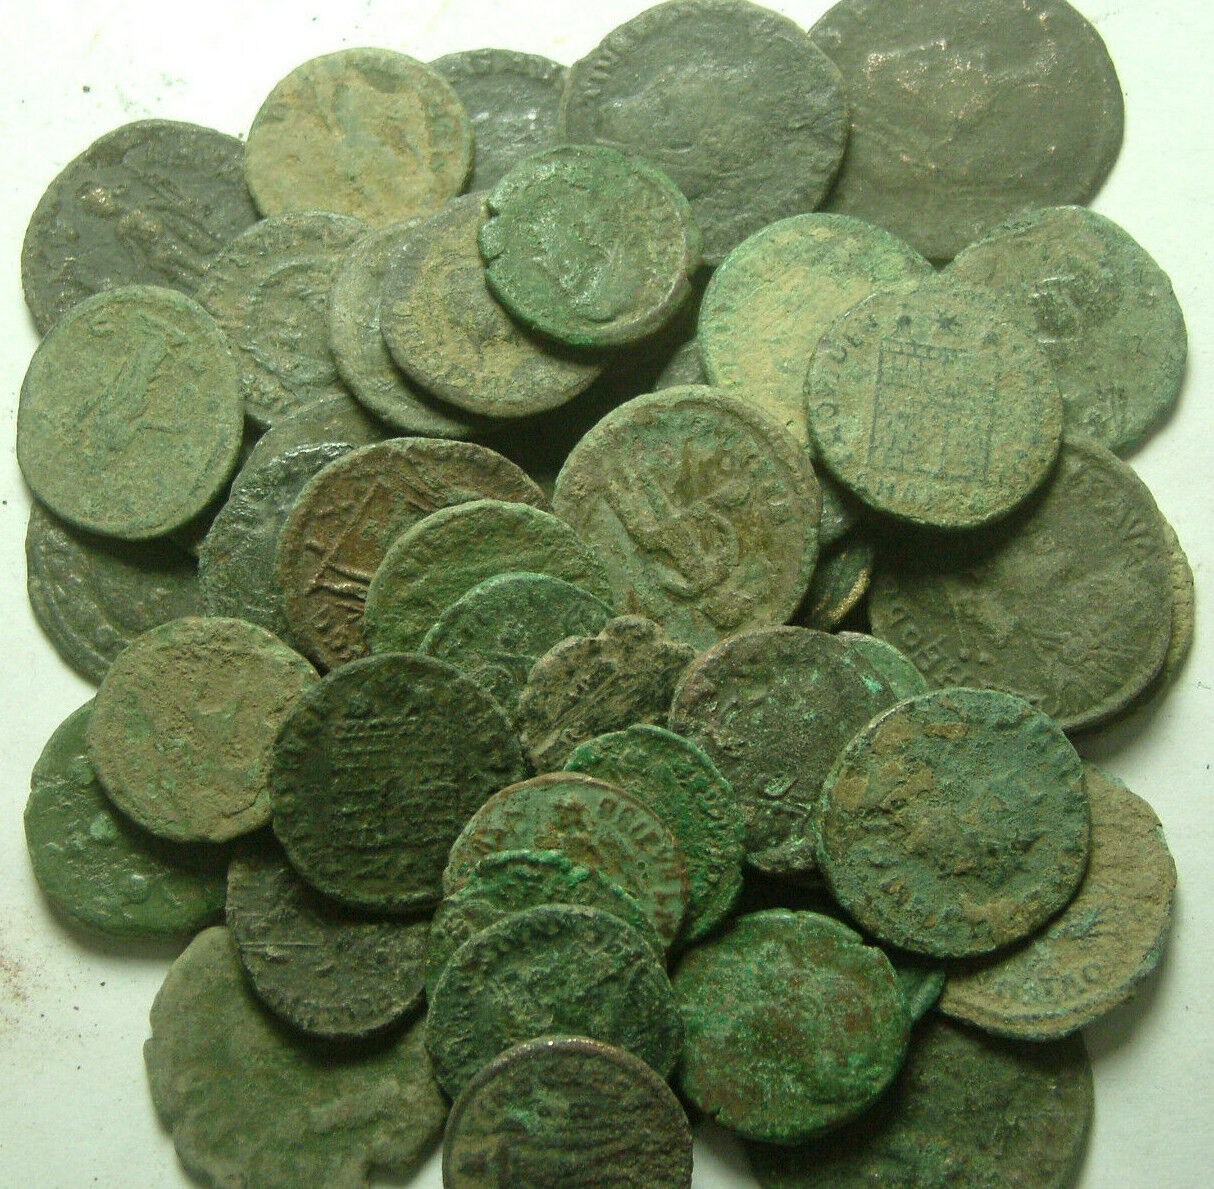 Lot genuine Ancient Roman coins Constantine/Valens/Constantius/Licinius/Claudius Без бренда - фотография #10